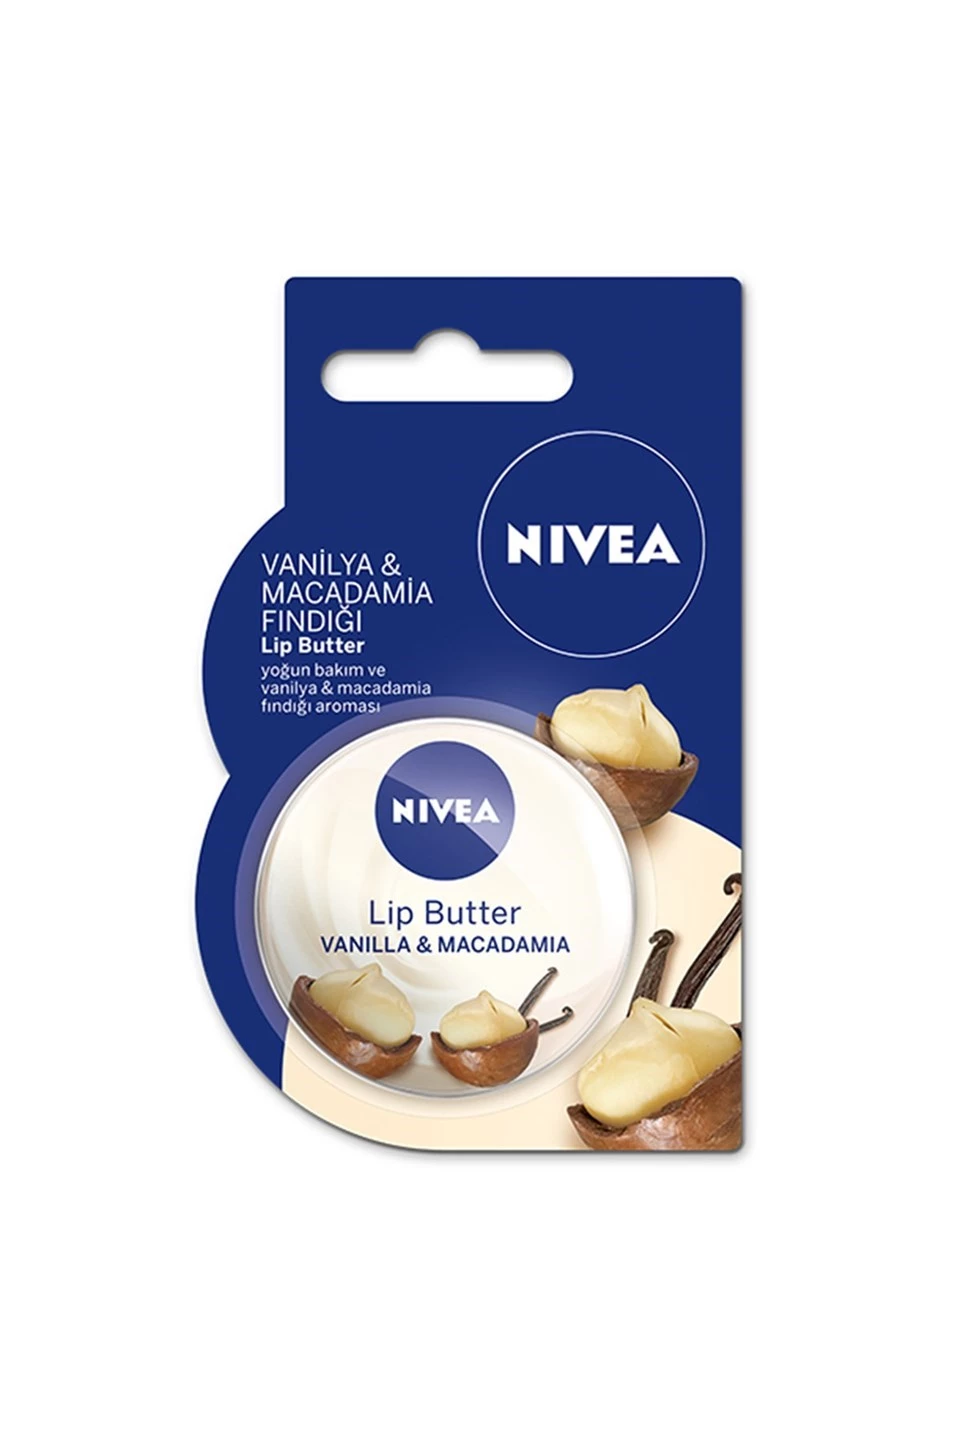 Nivea Vanilya & Macadamia Fındığı Içerikli Lip Butter 16,7